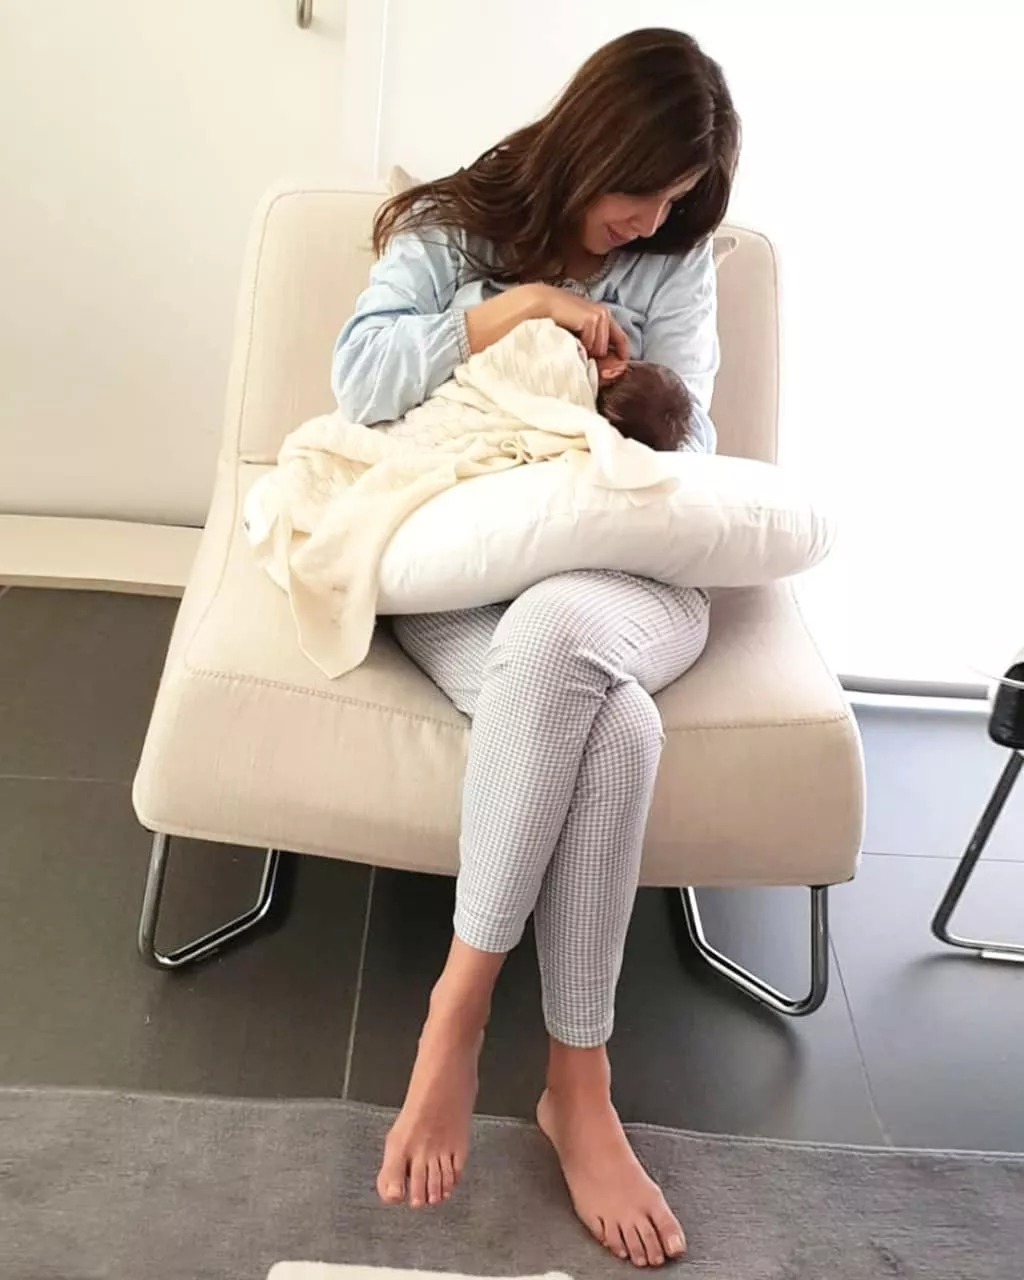 الصورة الأولى لنانسي عجرم مع ابنتها ليا: رسالة توعية حول الرضاعة الطبيعيّة!